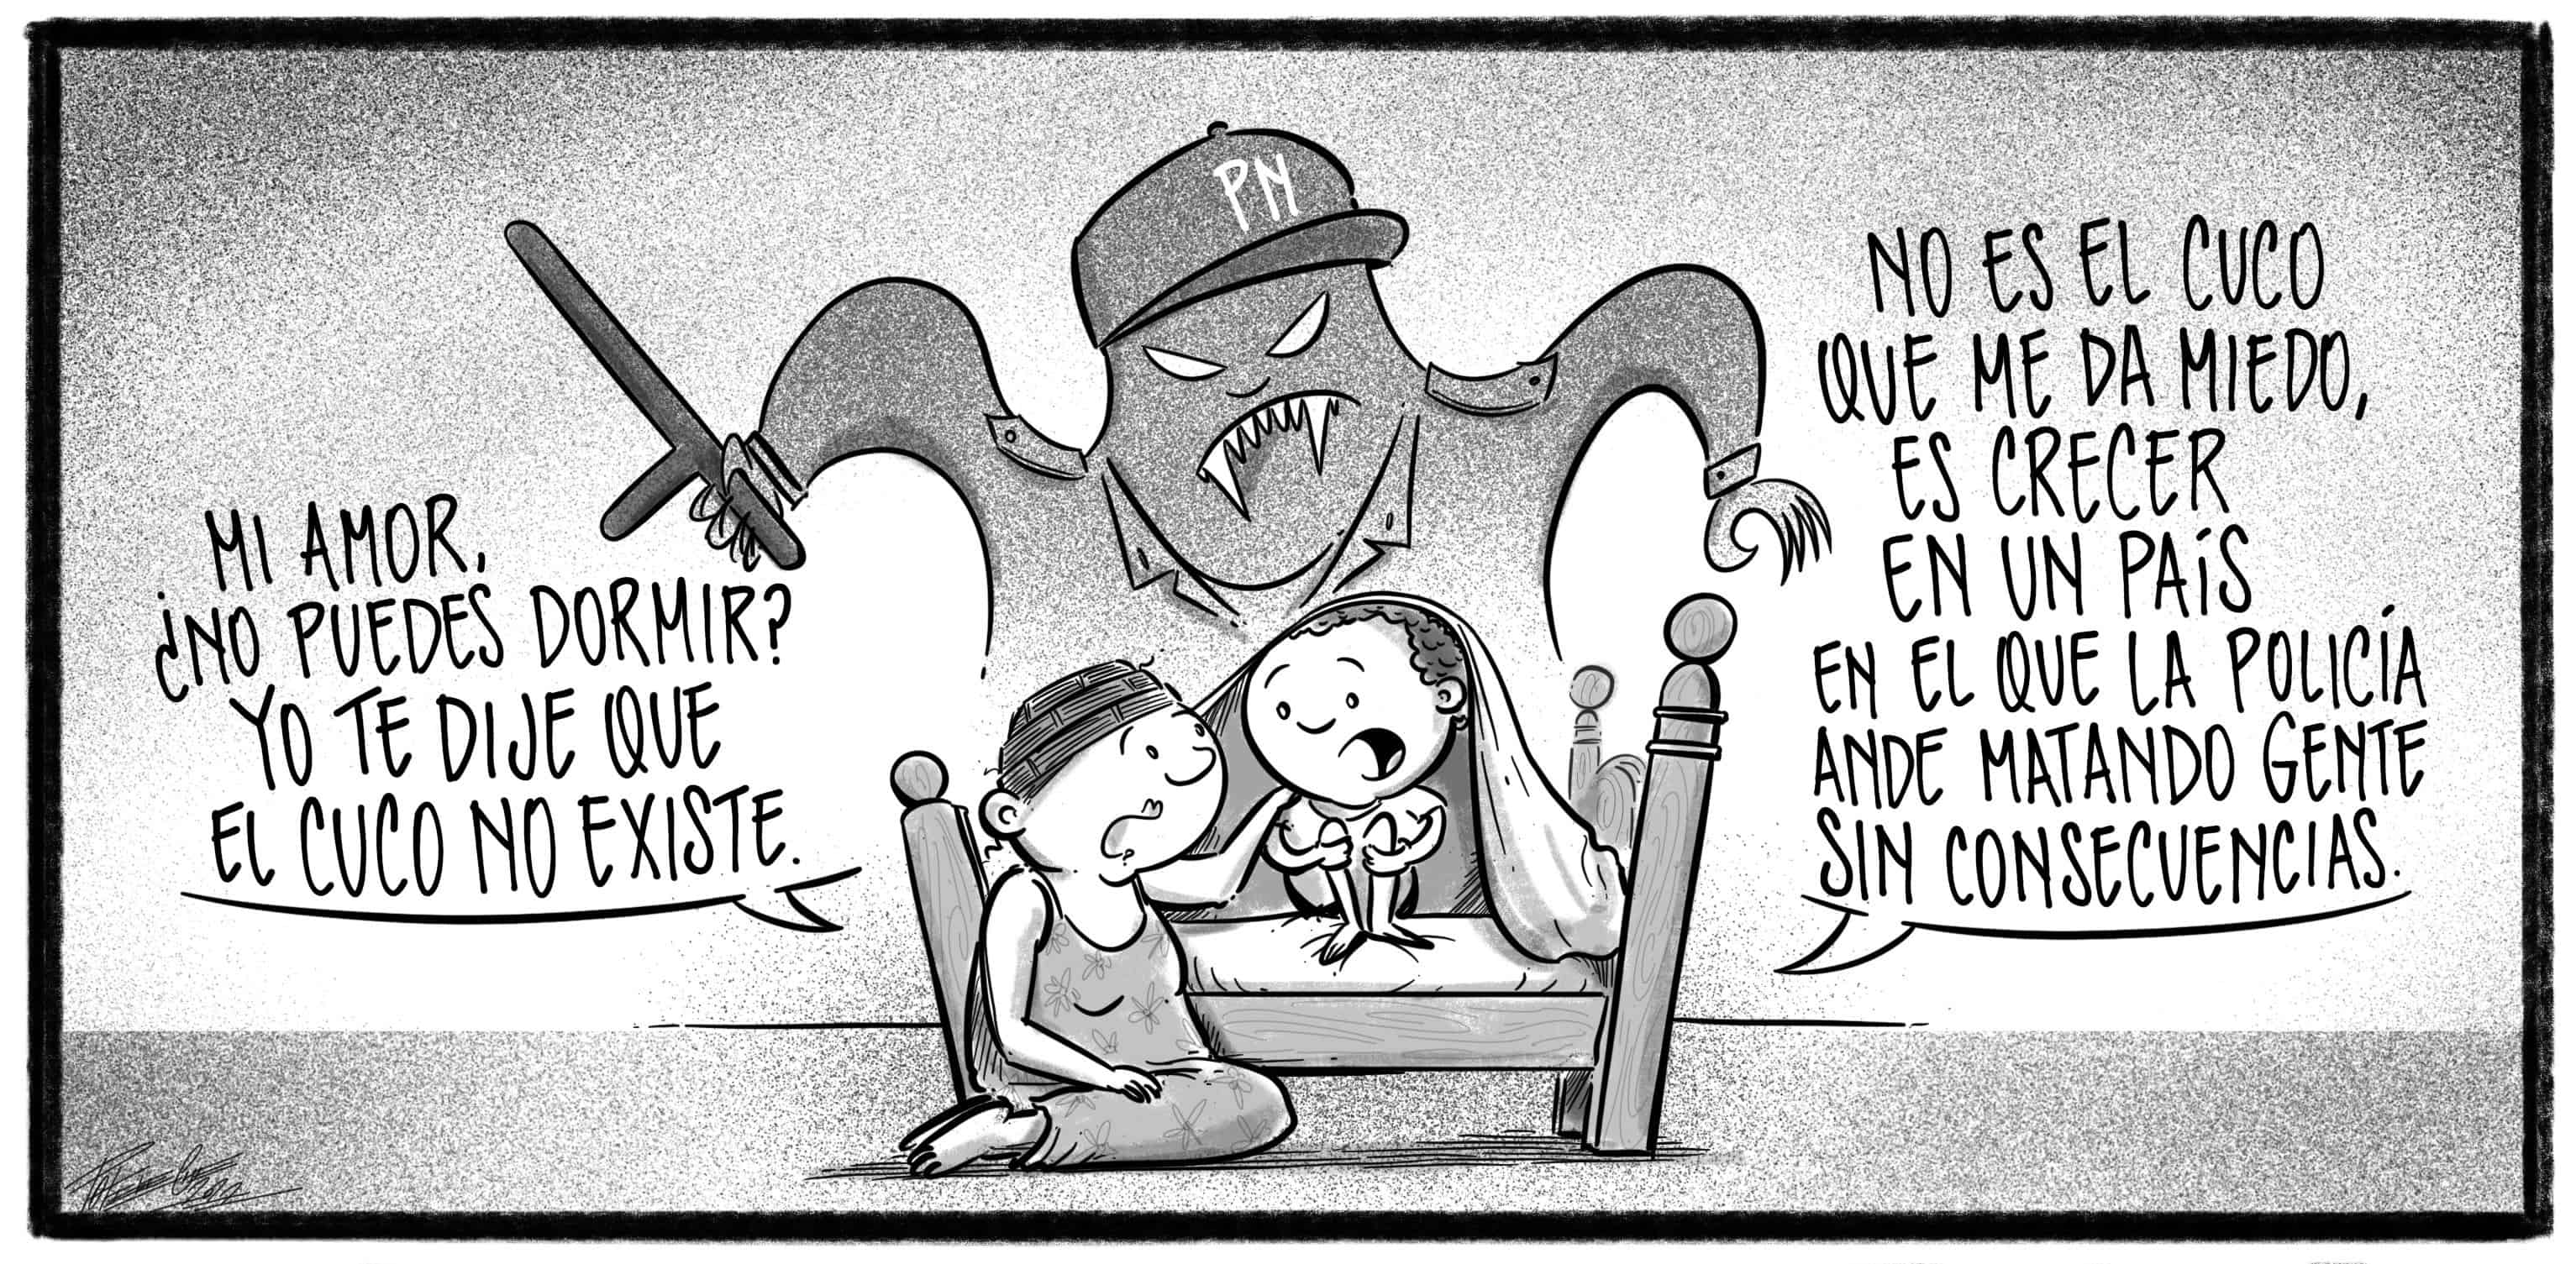 Caricatura Noticiero Poteleche 4 mayo 2022 - Diario Libre